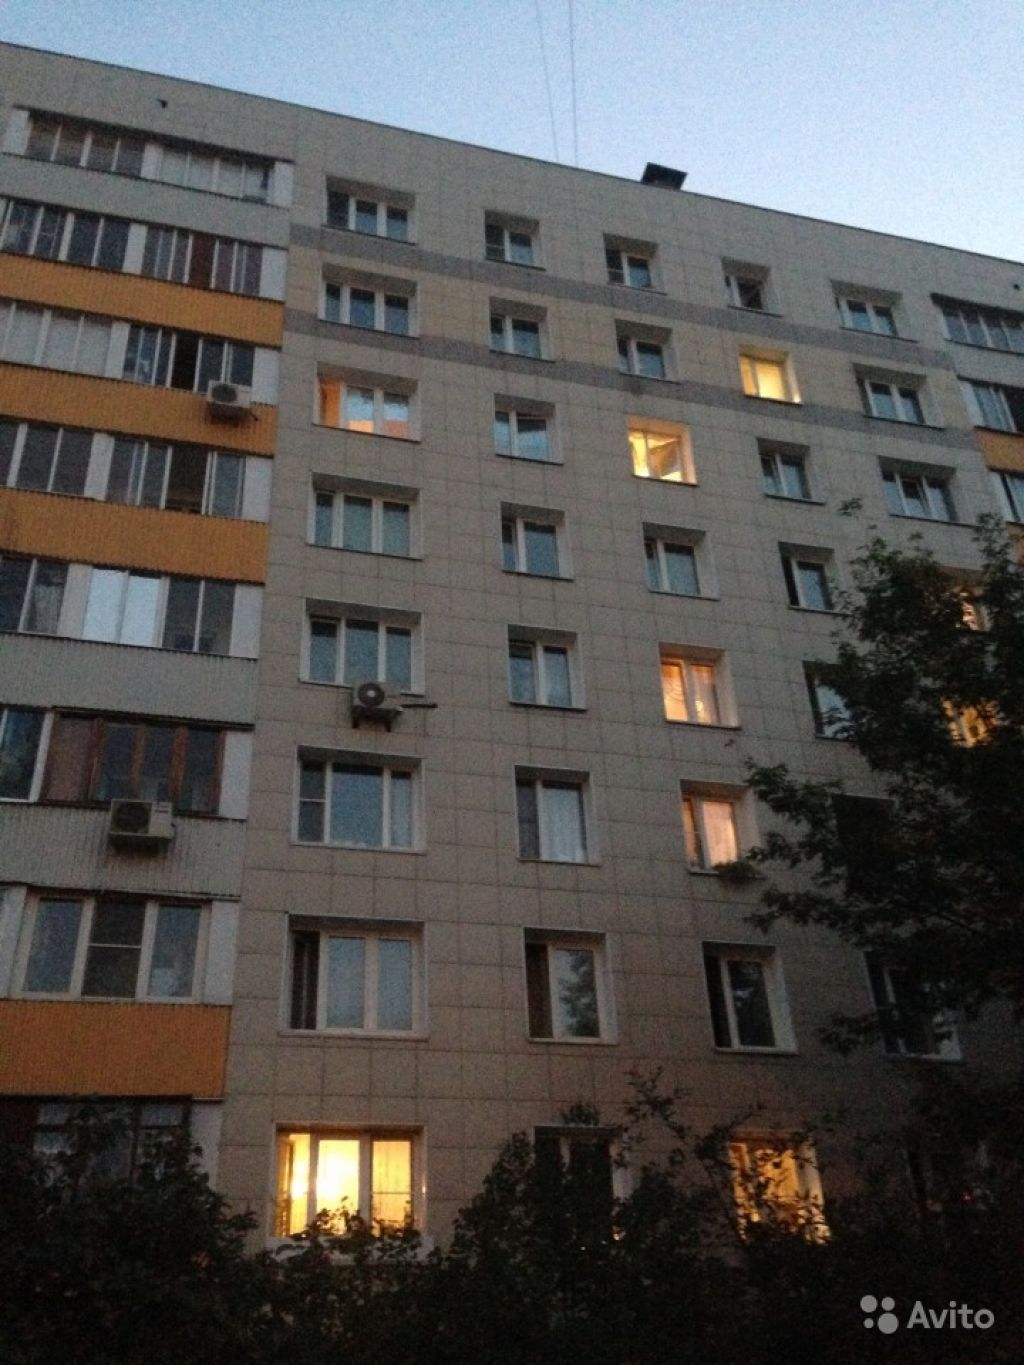 Продам квартиру 1-к квартира 32.5 м² на 2 этаже 9-этажного панельного дома в Москве. Фото 1